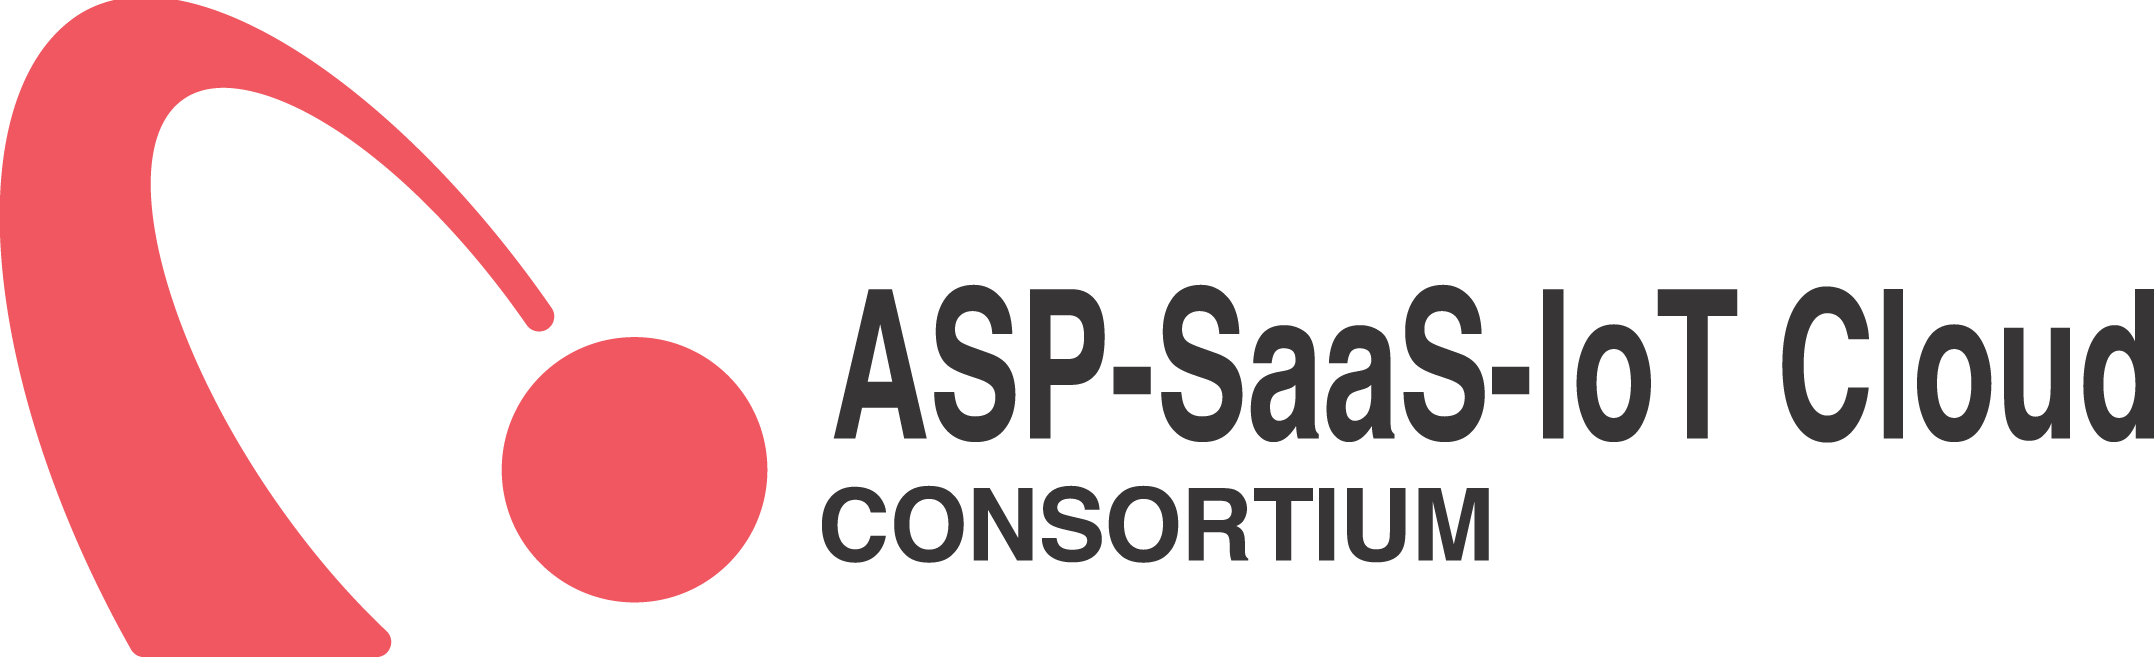 特定非営利活動法人 ASP・SaaS・IoT クラウド コンソーシアム（ASPIC）